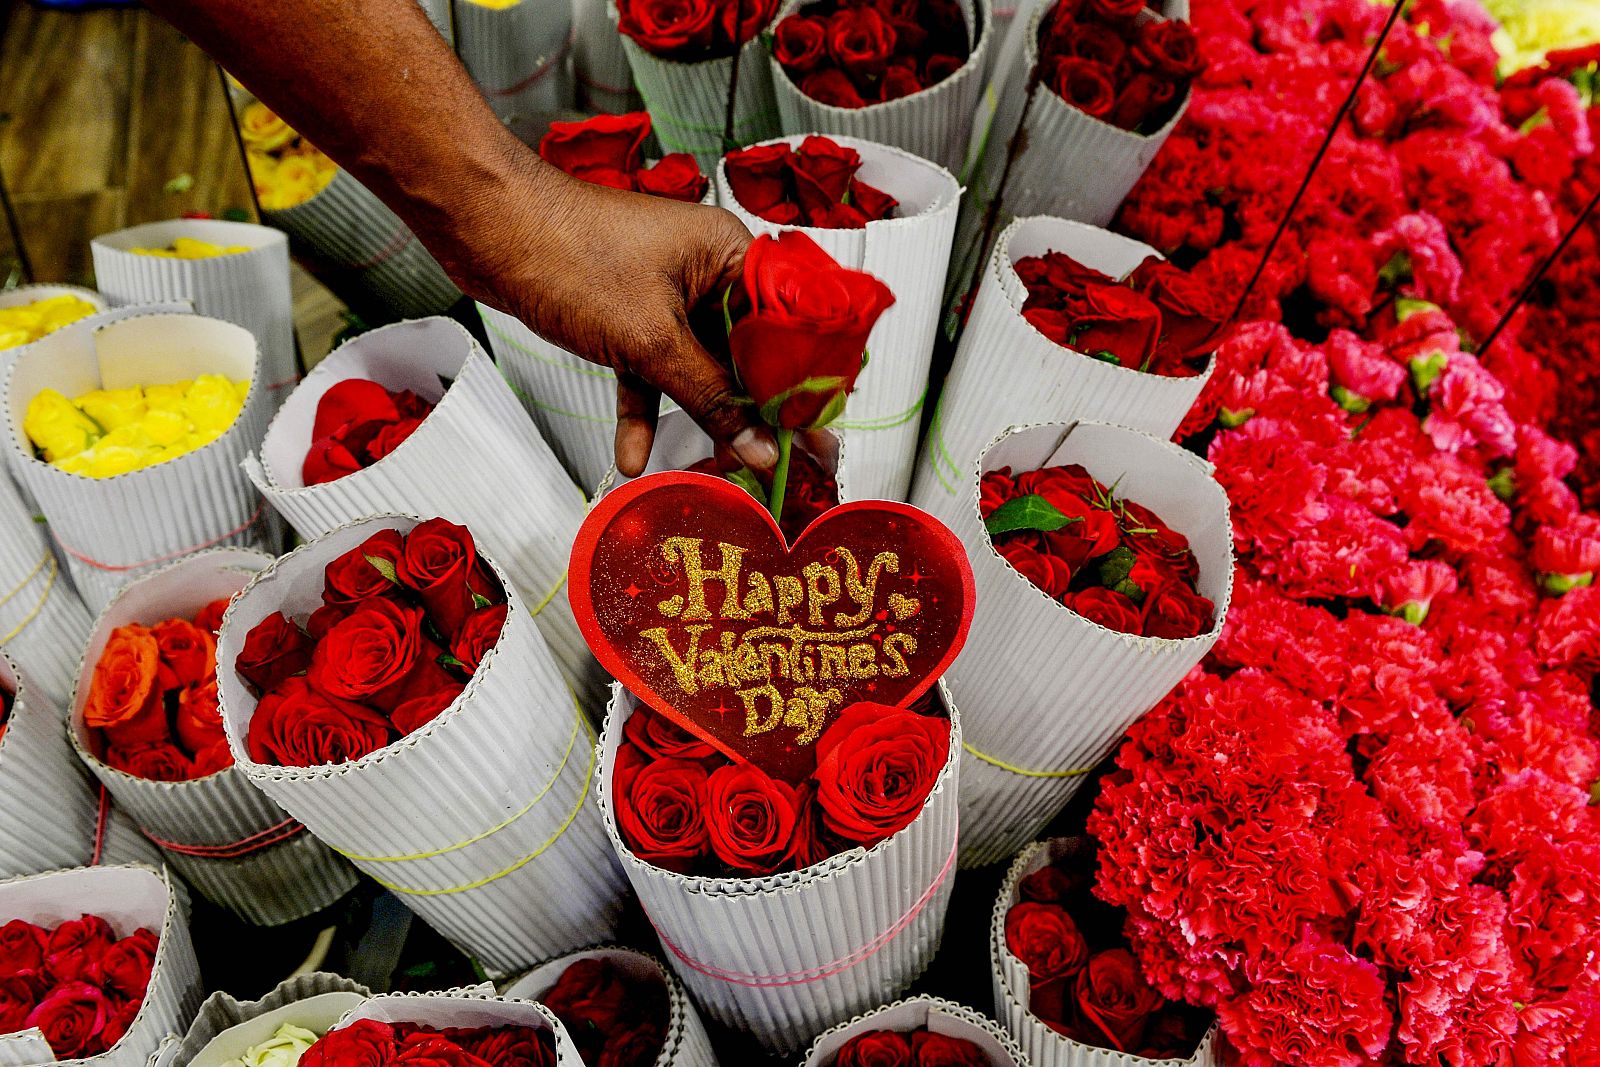  Una floristería llena de rosas rojas por el día de San Valentín